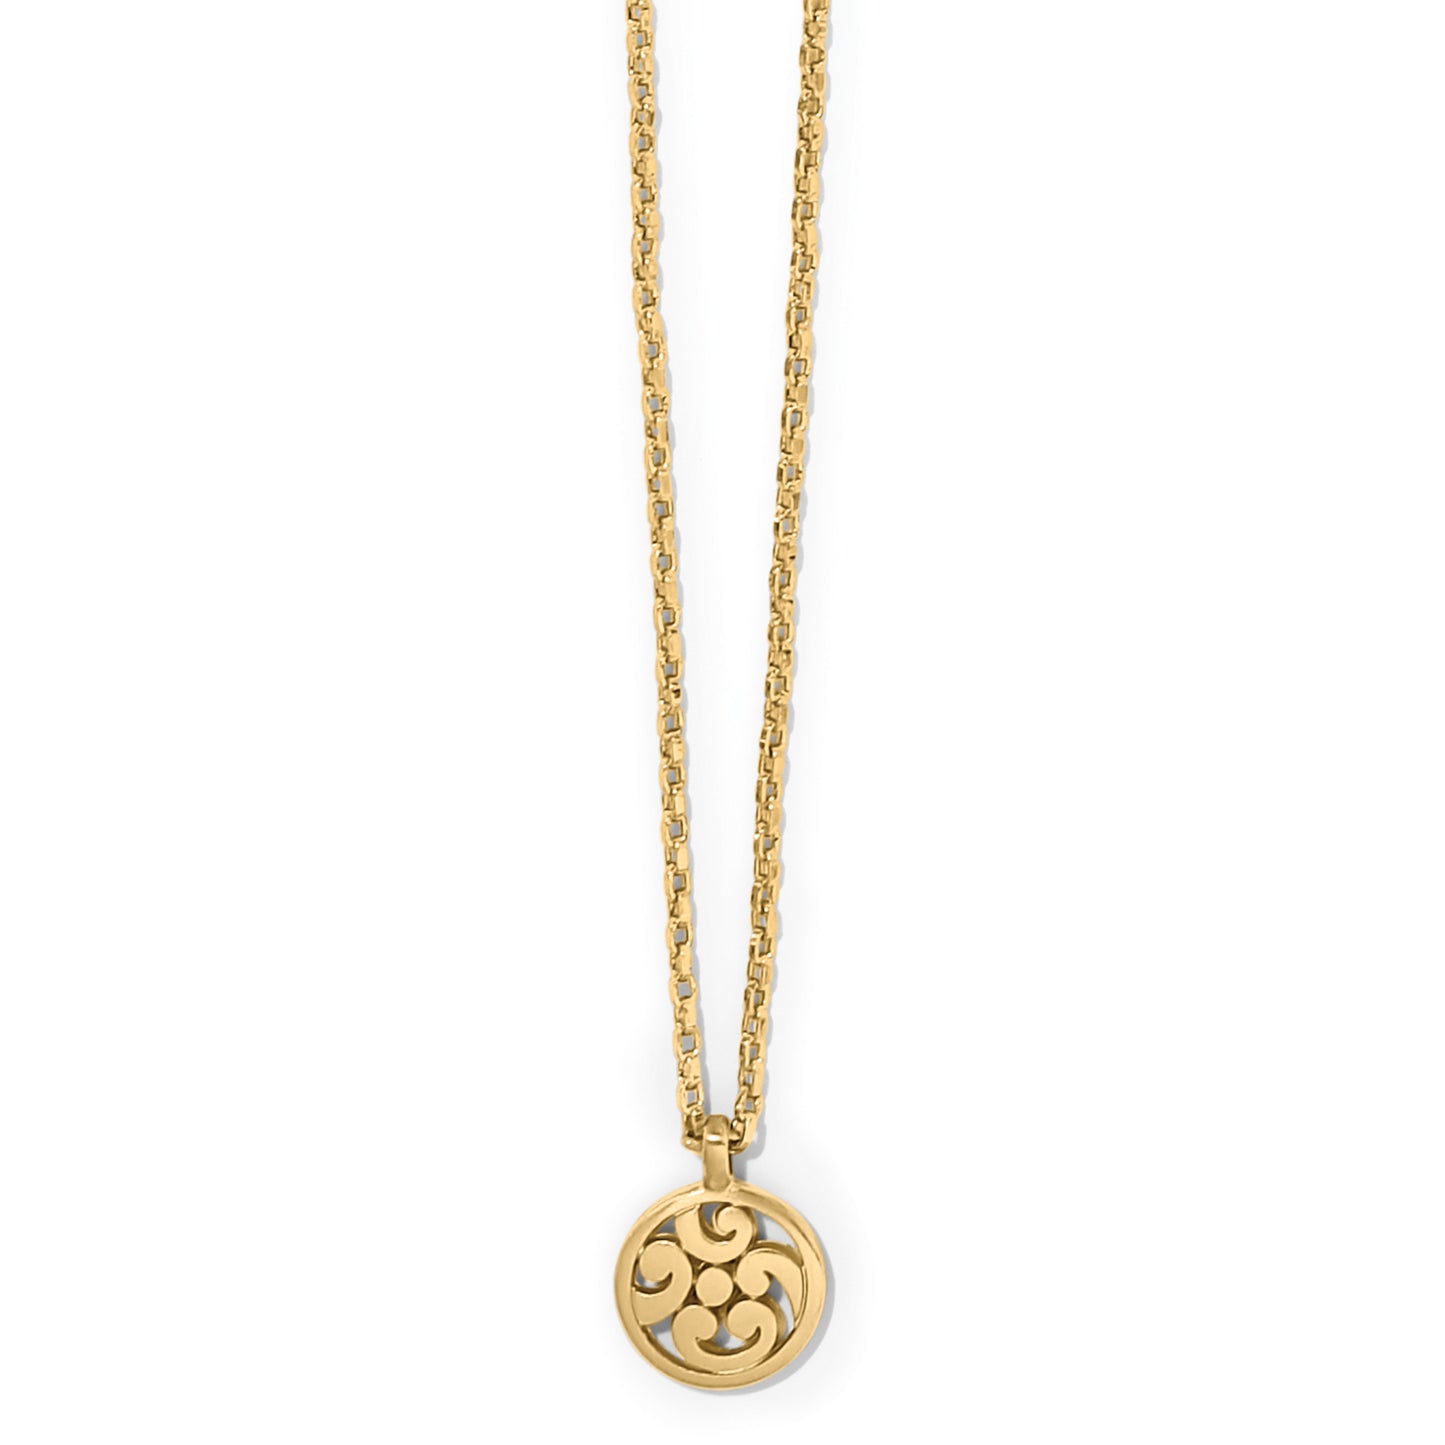 Contempo Medallion Petite Necklace - Brazos Avenue Market 